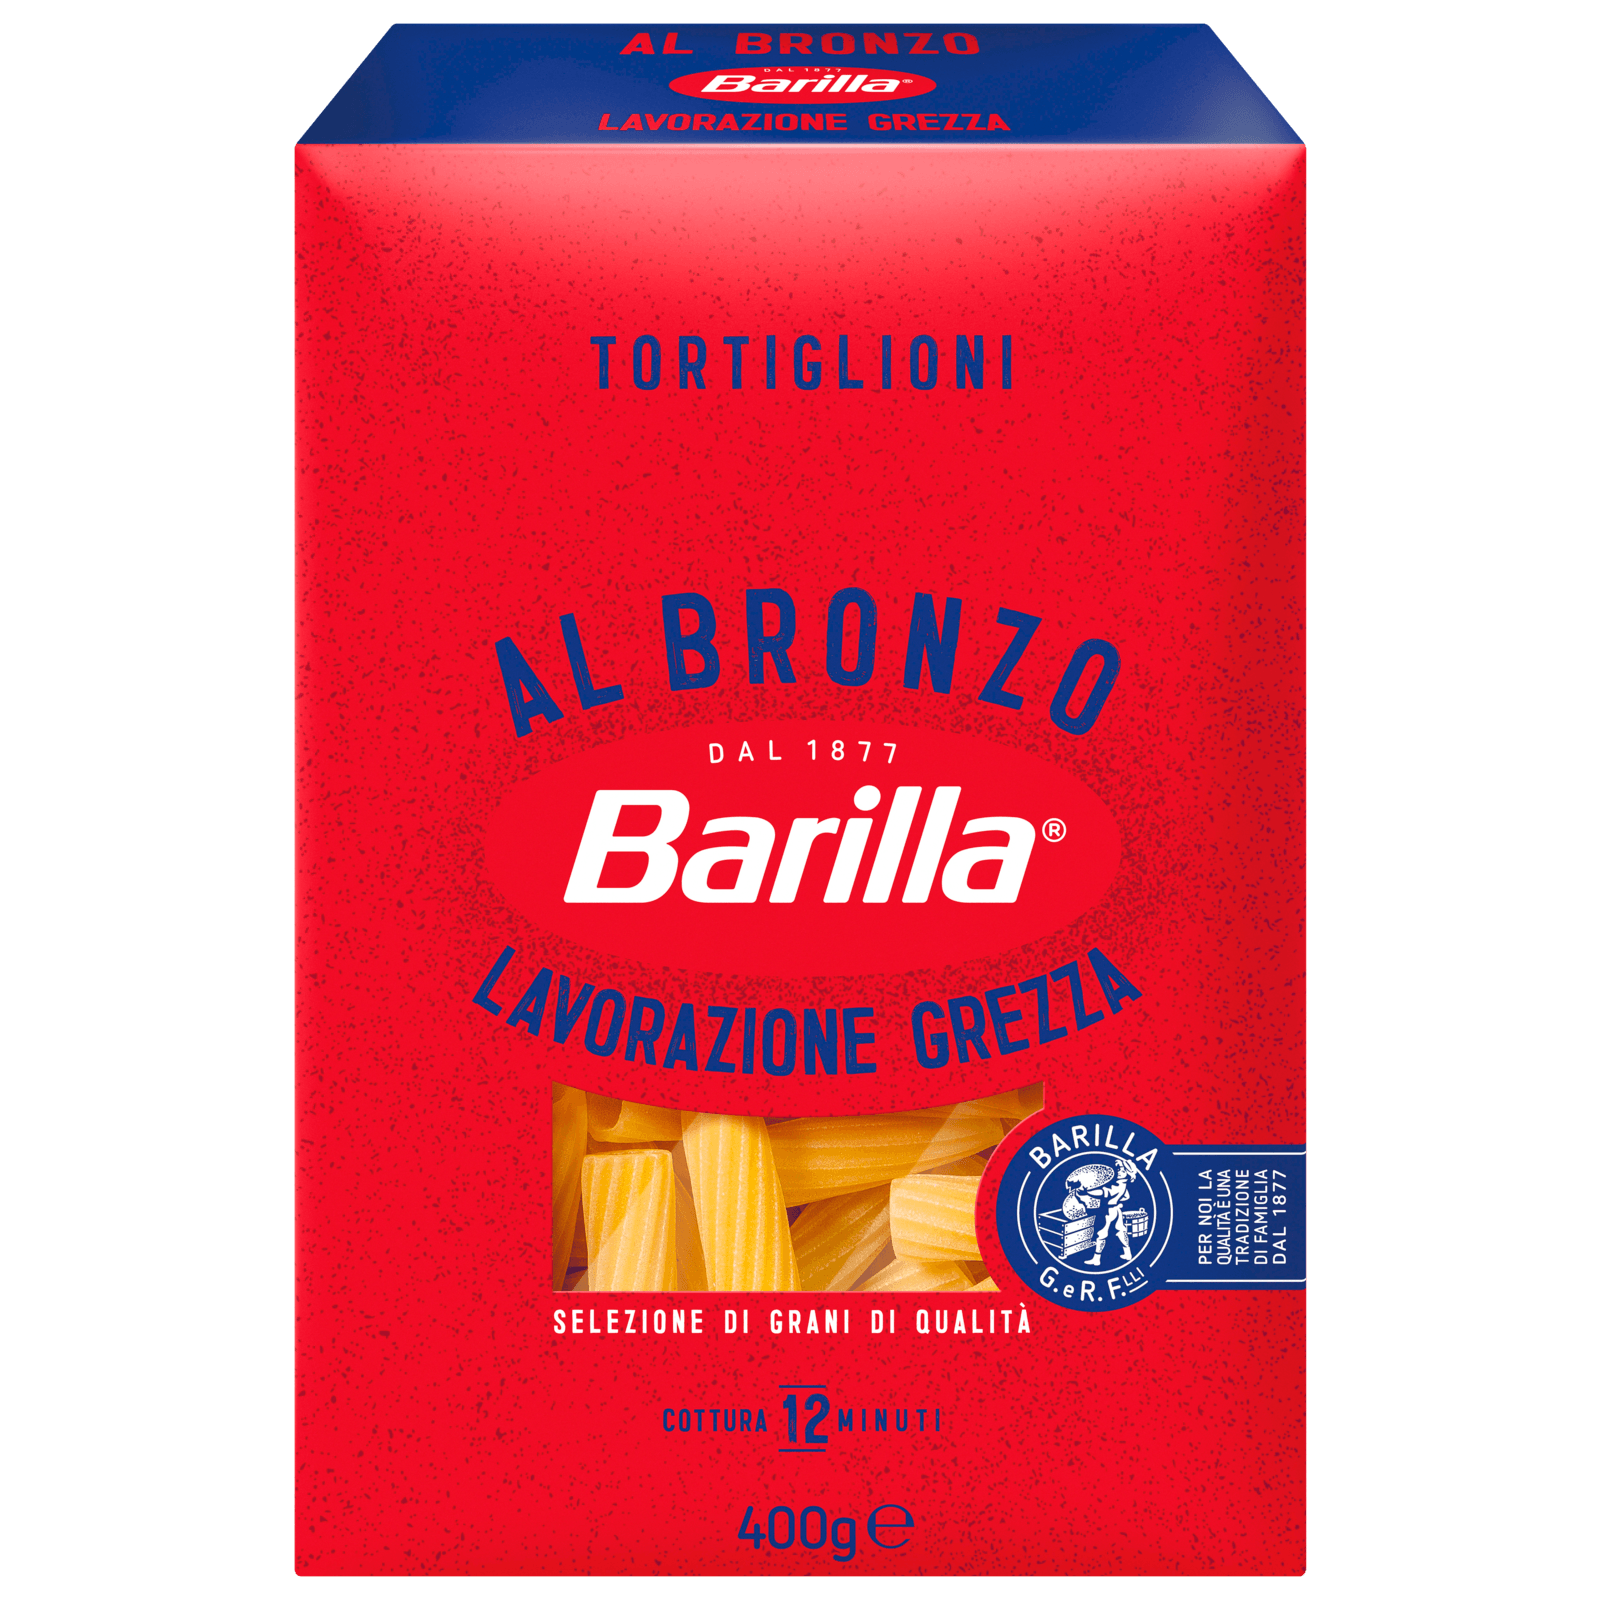 Pasta Tortiglioni Al Bronz 400g Barilla